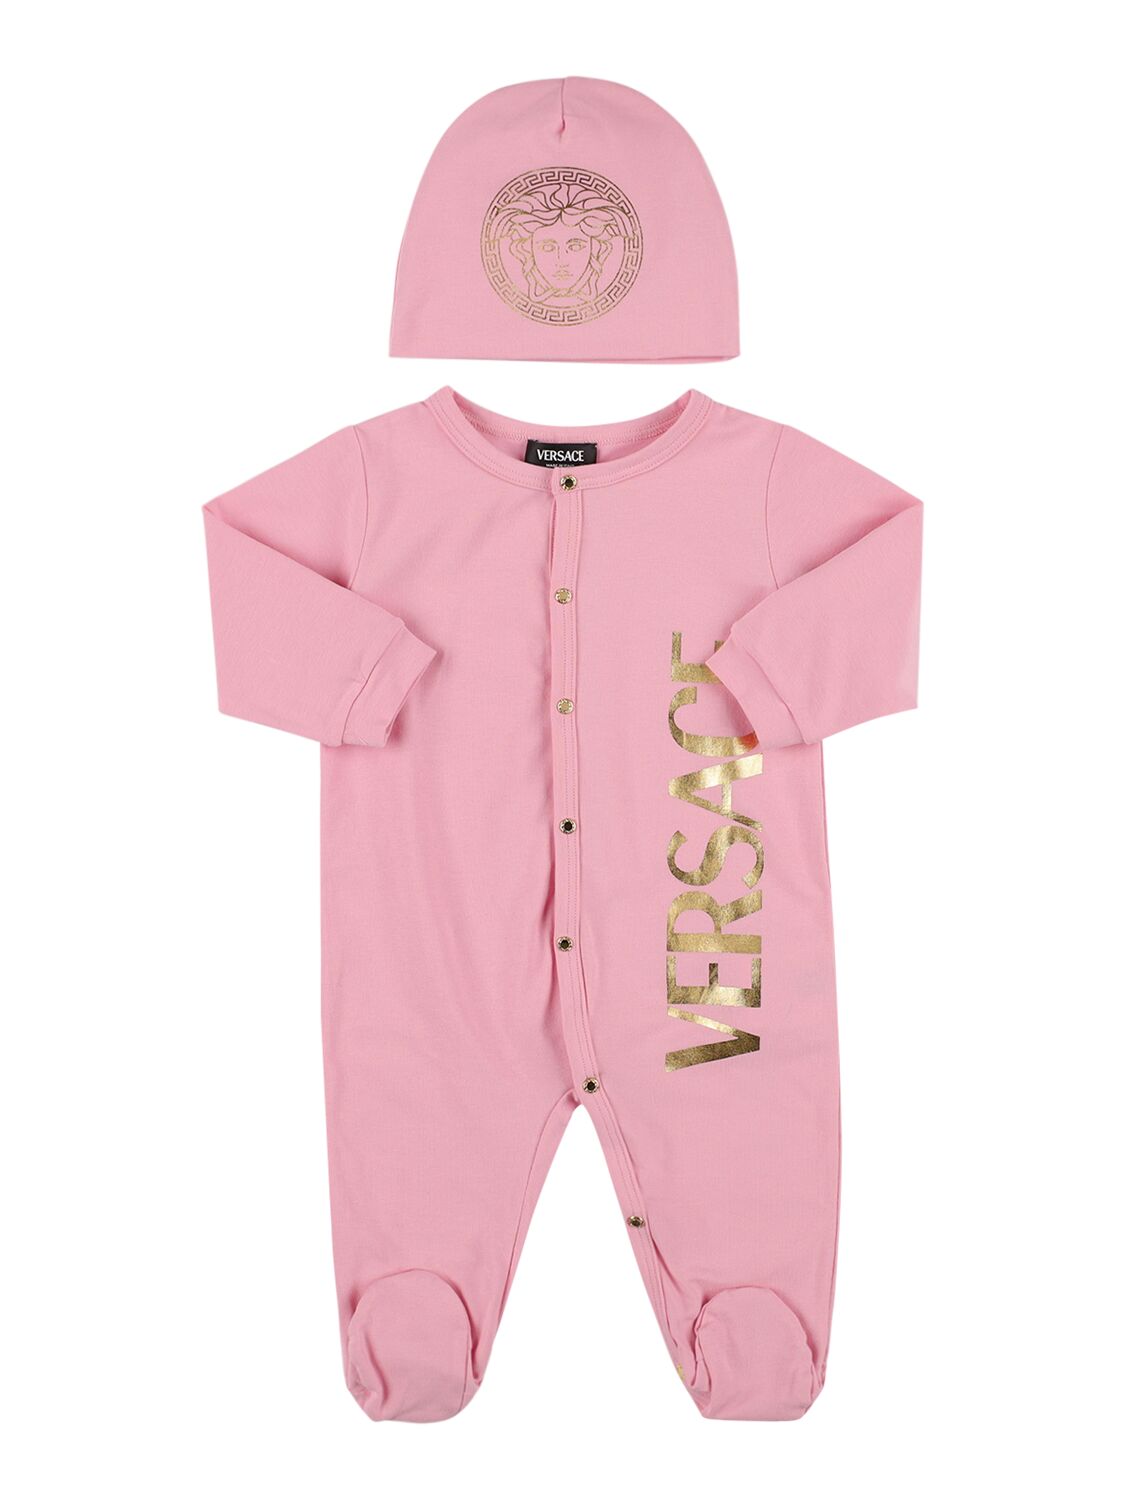 Versace Babies' Cotton Jersey Romper & Hat In Pink